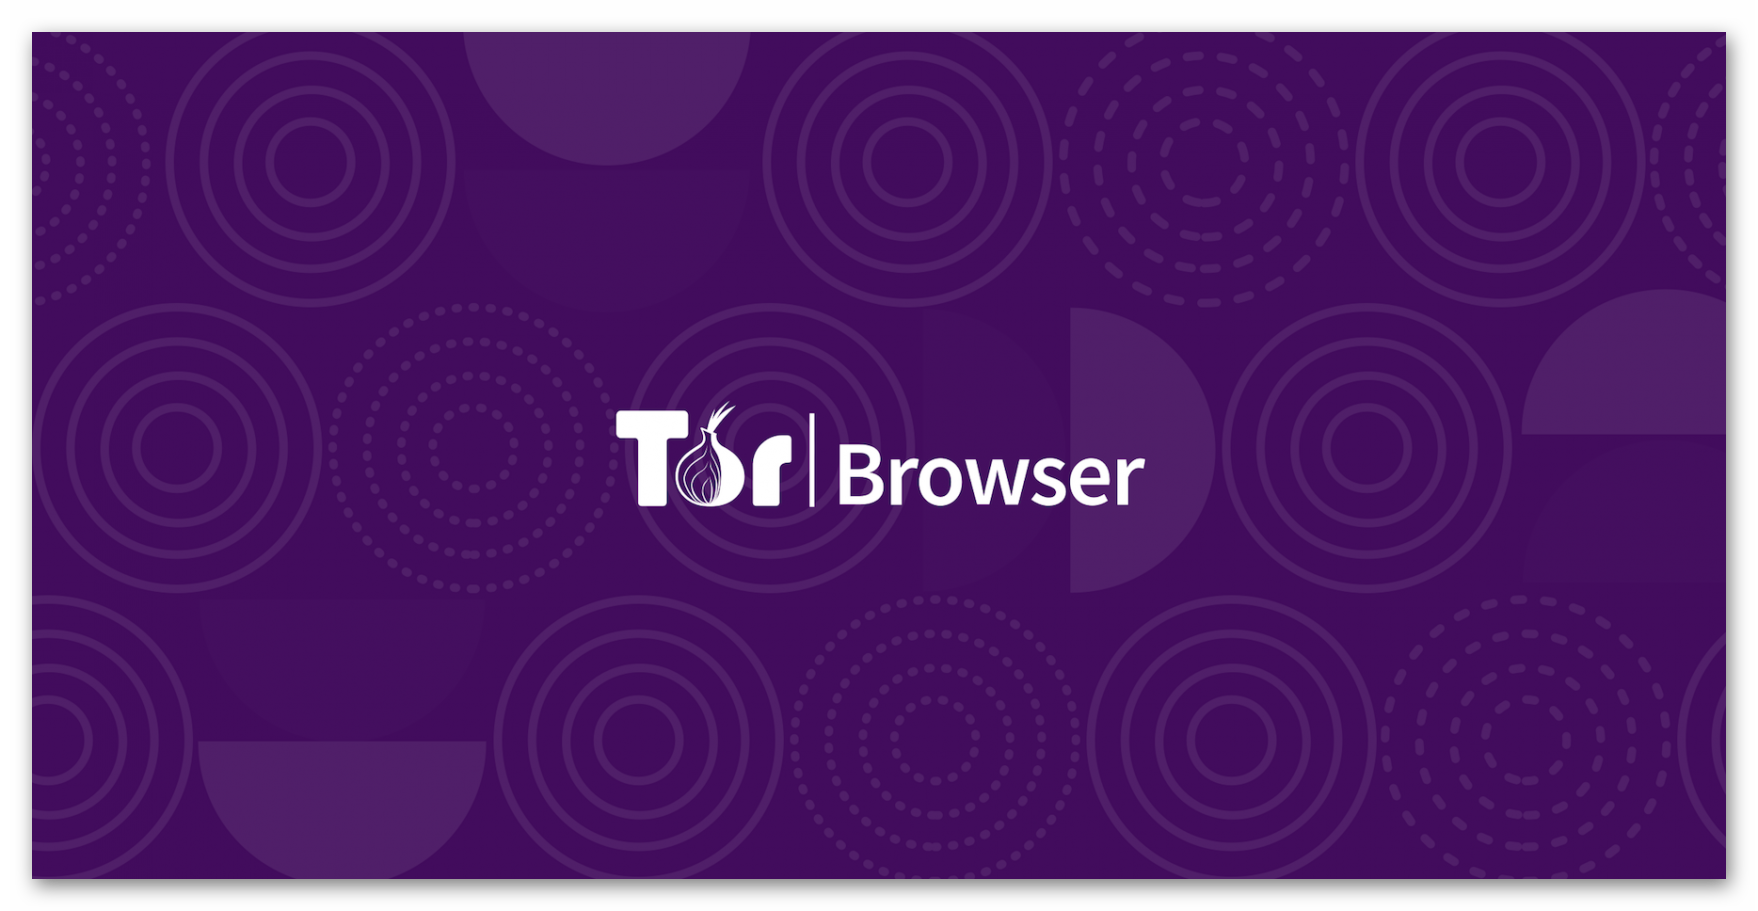 Можно ли пользоваться браузером тор в россии mega2web tor browser скачать бесплатно на андроид mega